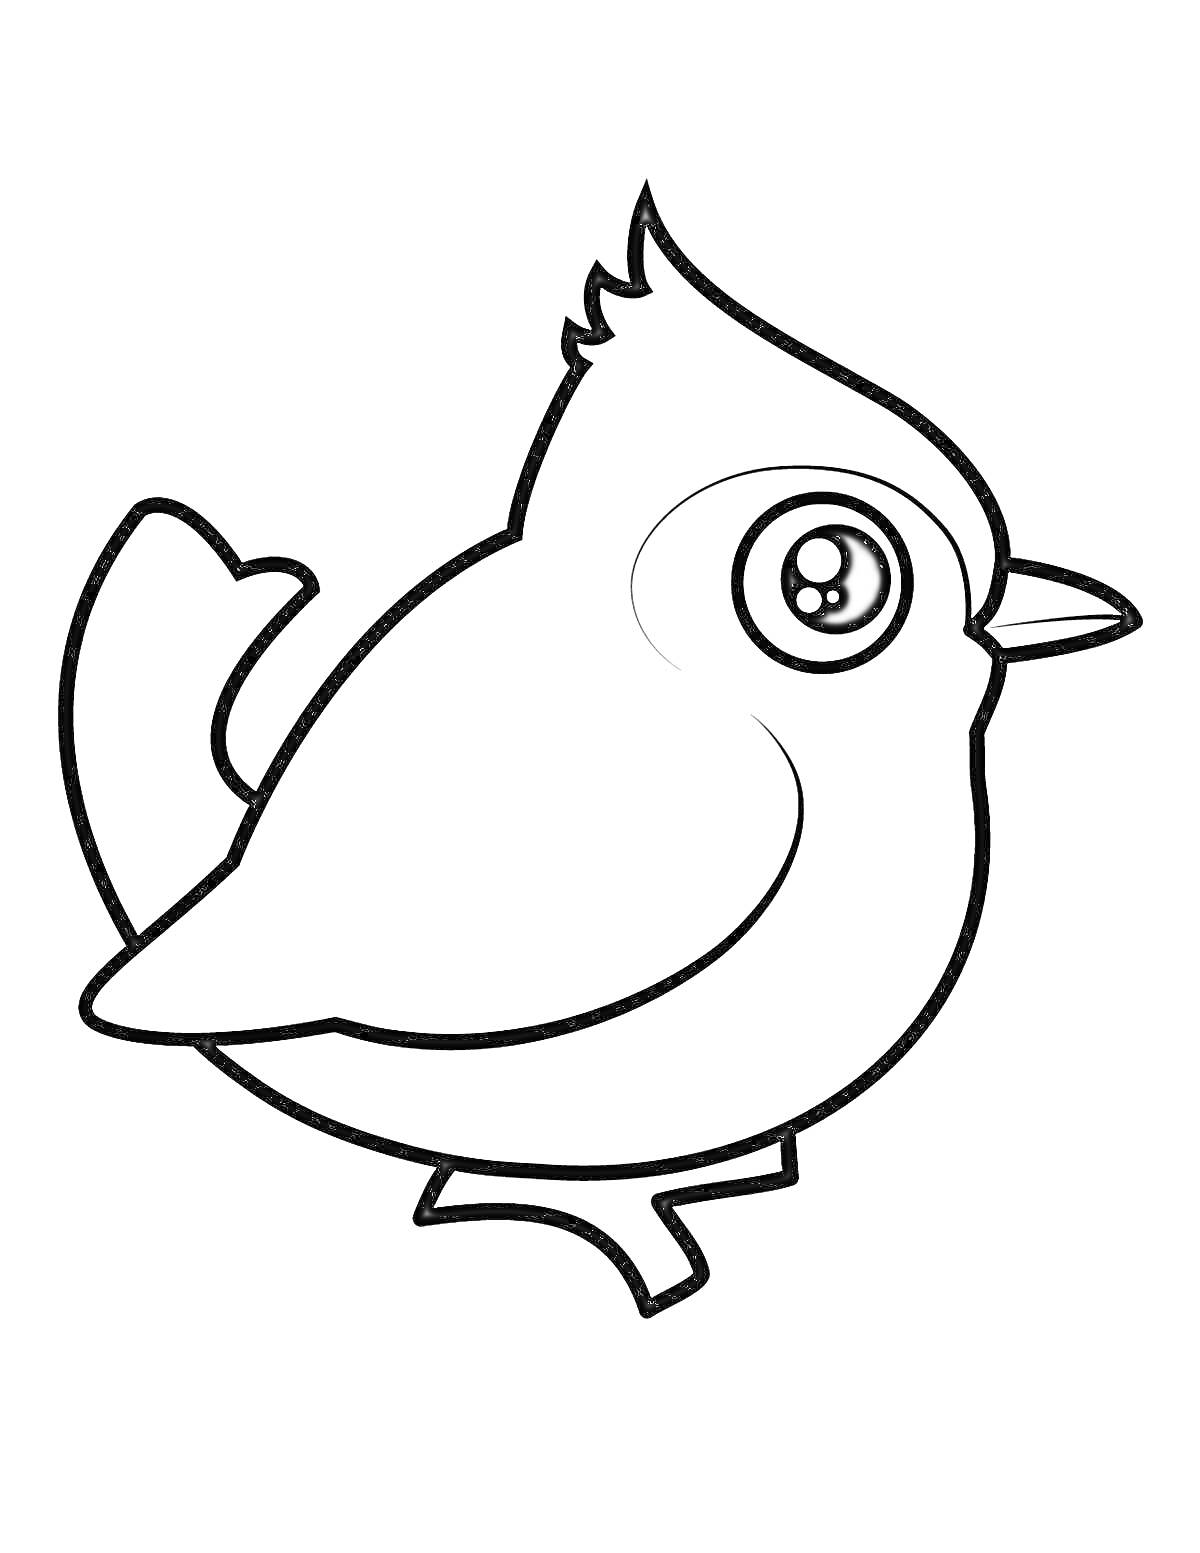 Раскраска Птичка с большими глазами и хохолком на голове